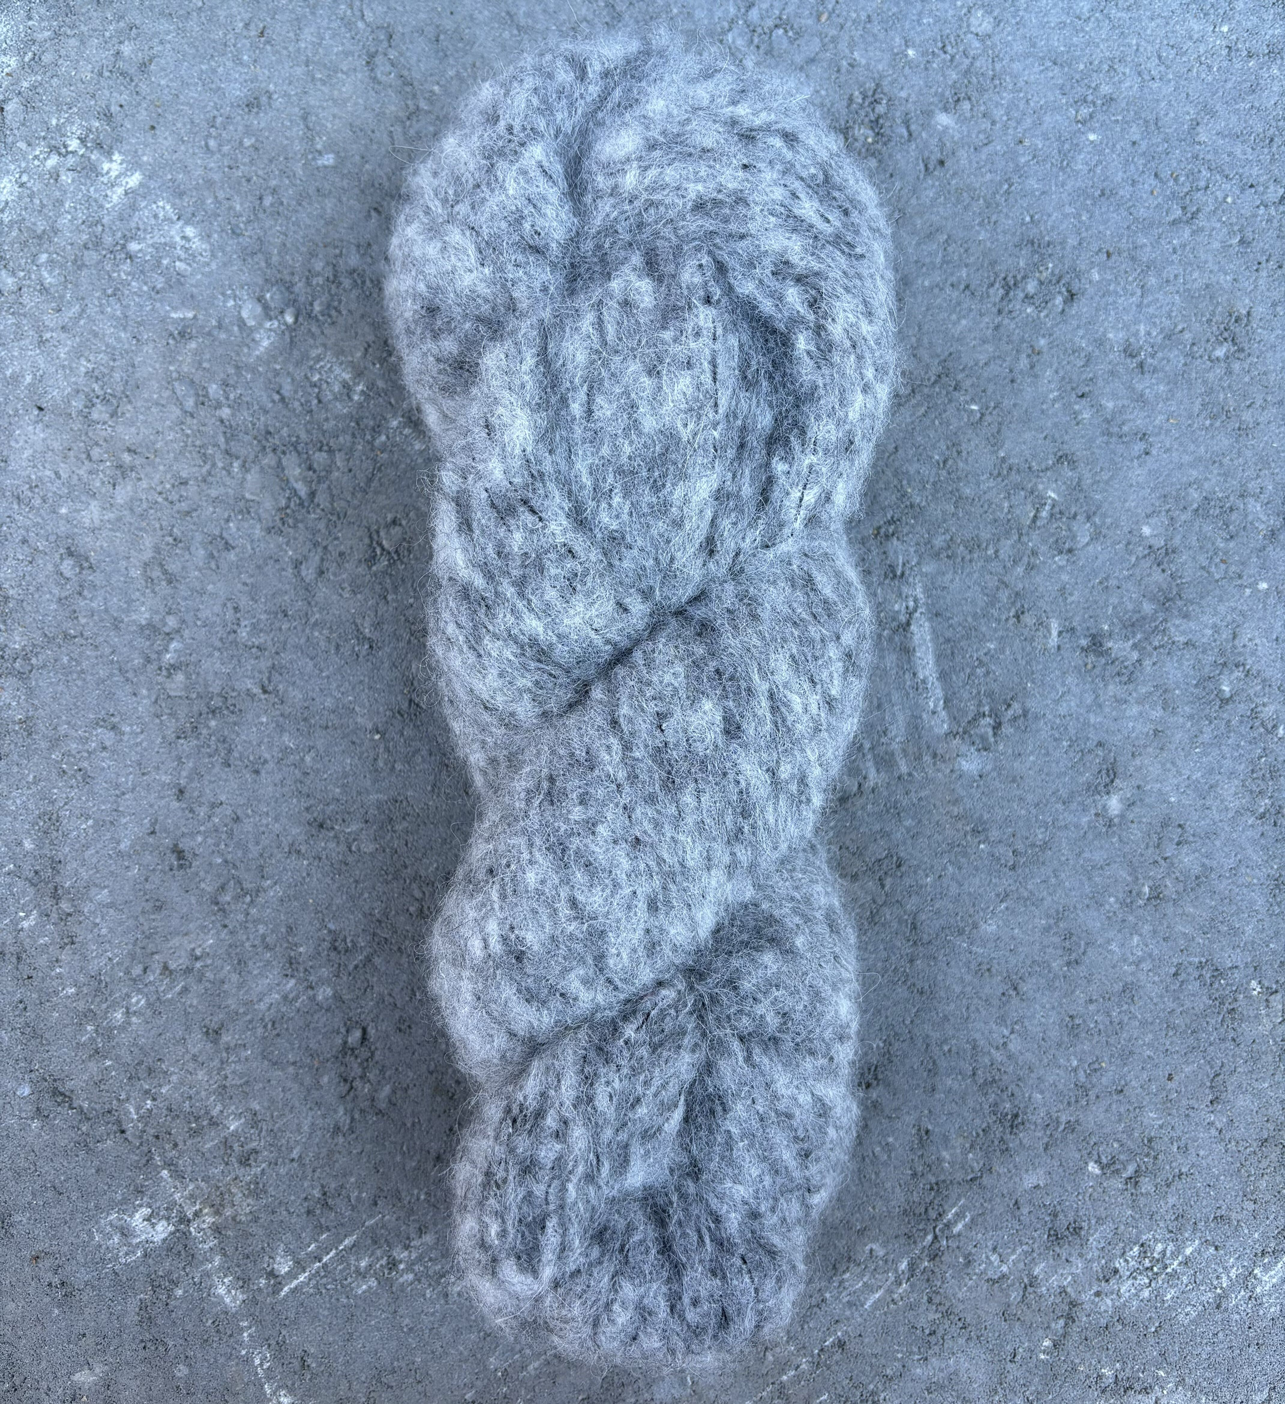 Gray Alpaca Yarn